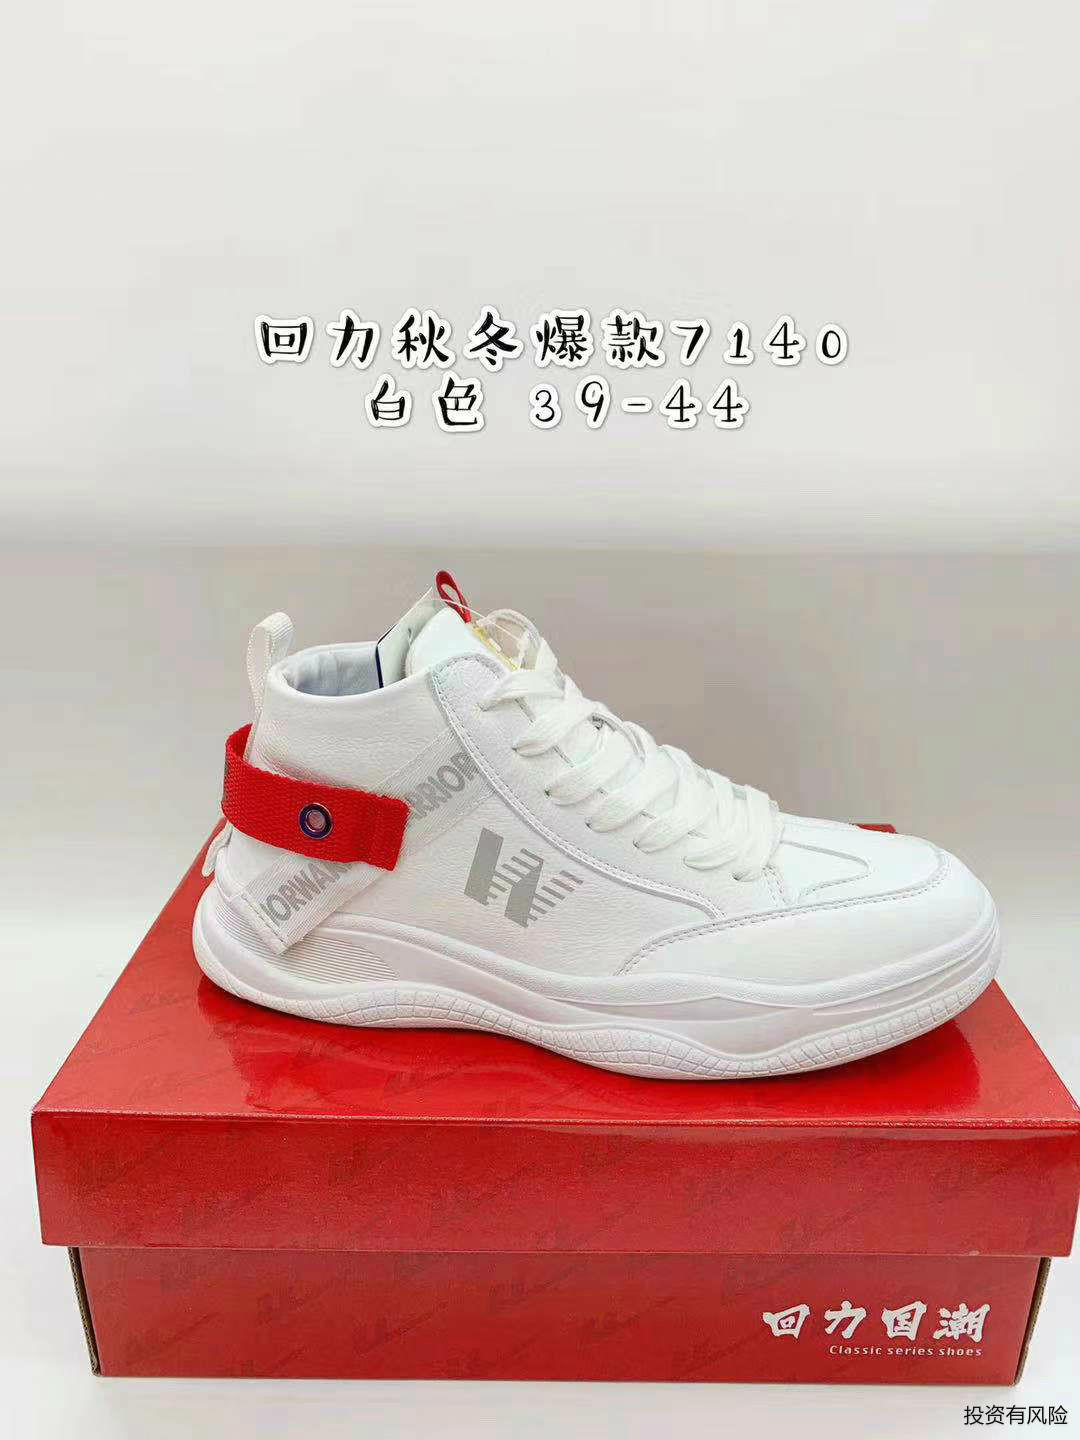 宜昌回力鞋招商需要多少钱 欢迎来电「武汉市黄陂区脚踏实地鞋业供应」